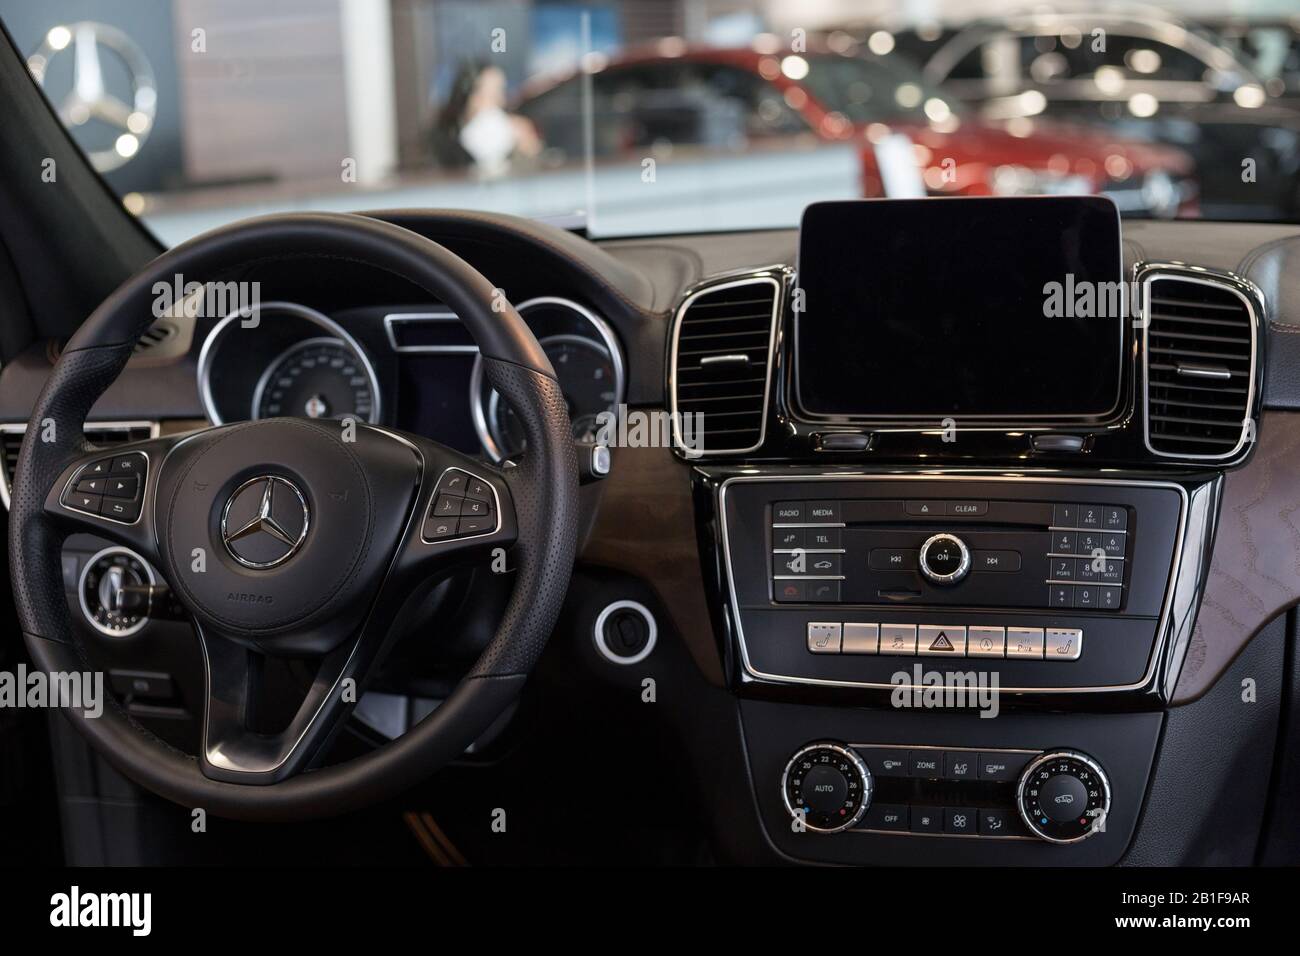 Russland, Izhewsk - 20. Februar 2020: Mercedes-Benz Showroom. Innenraum des neuen modernen GLS 350d. Berühmte Weltmarke. Moderner Transport. Stockfoto